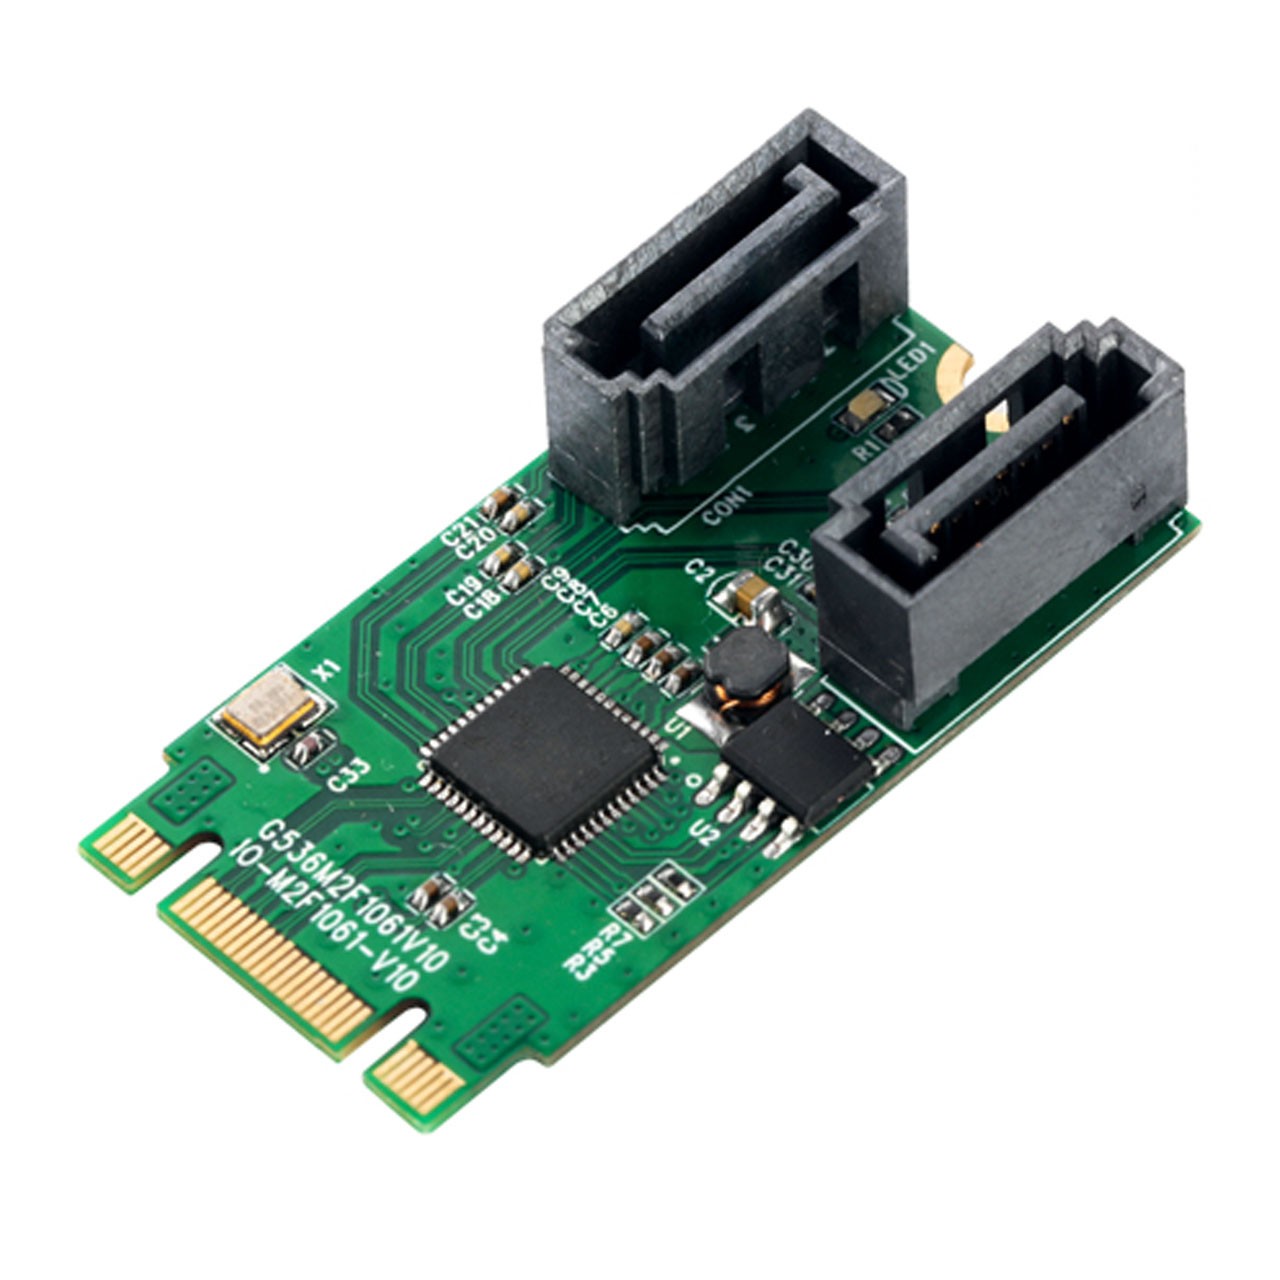 تبدیل mini PCIe / M.2 به پورت SATA 6G RAID مدل IO-M2F1061R-2IR با چیپ AS1061R